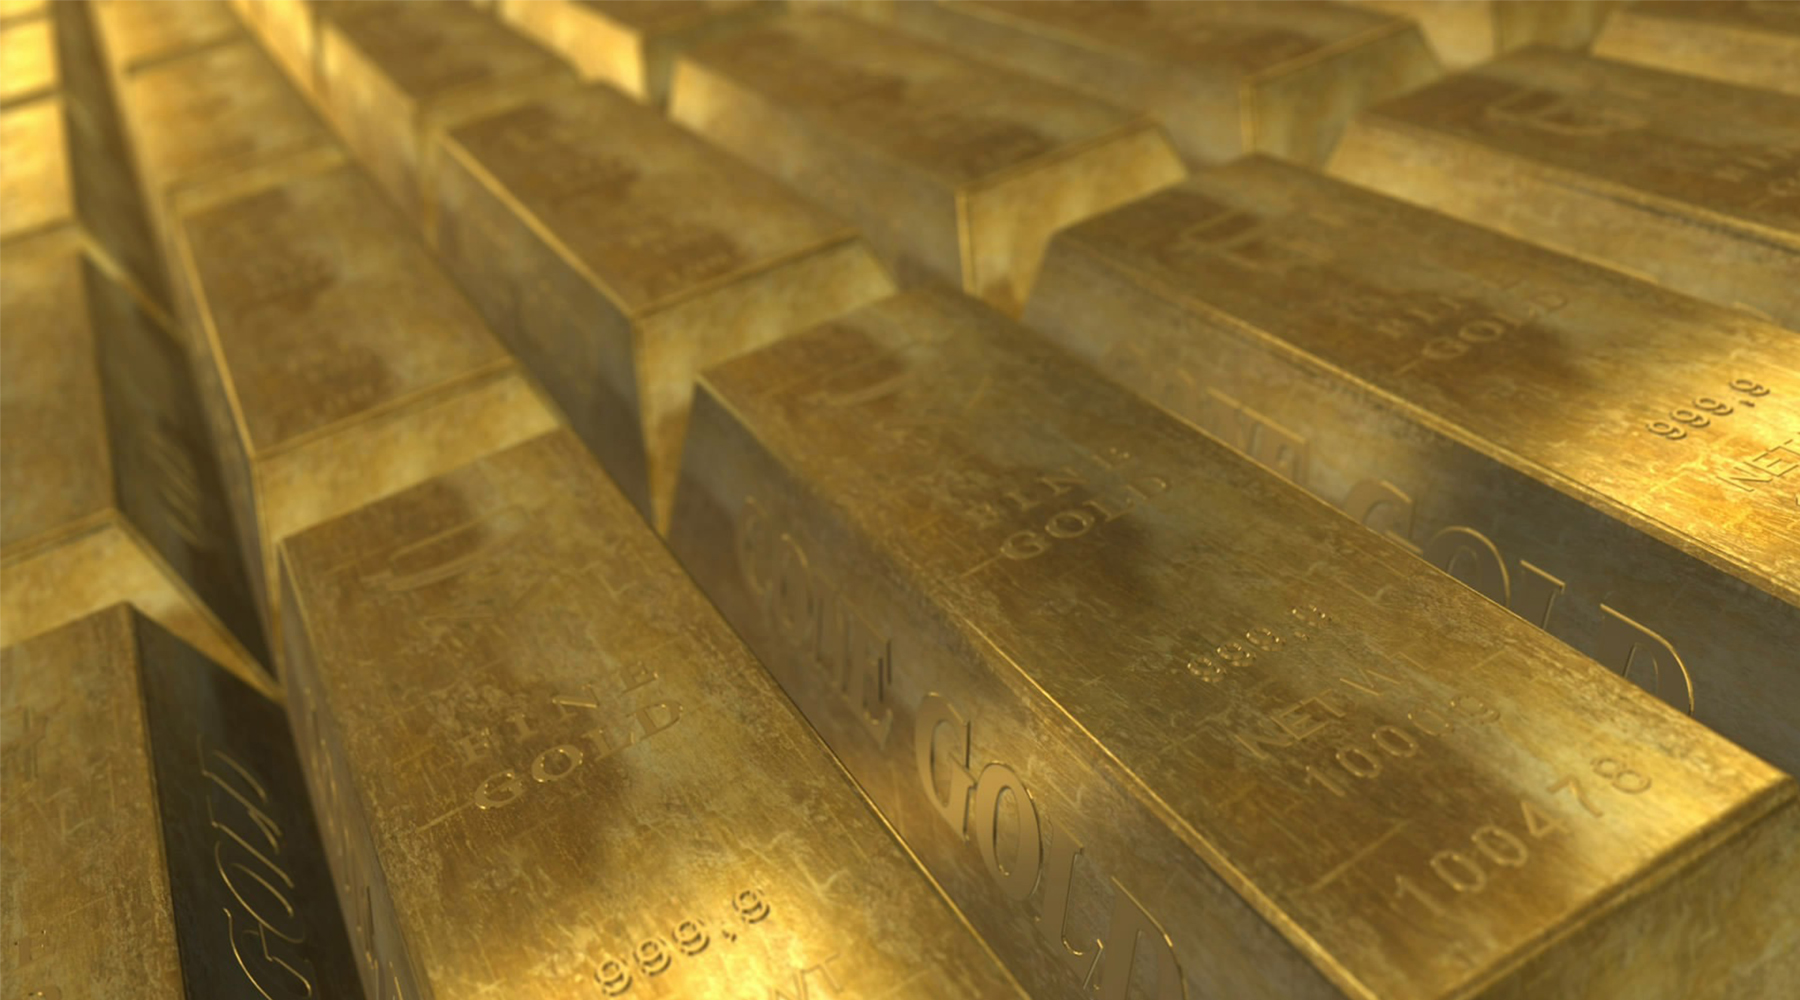 Pourquoi l’Allemagne veut-elle récupérer son or ?